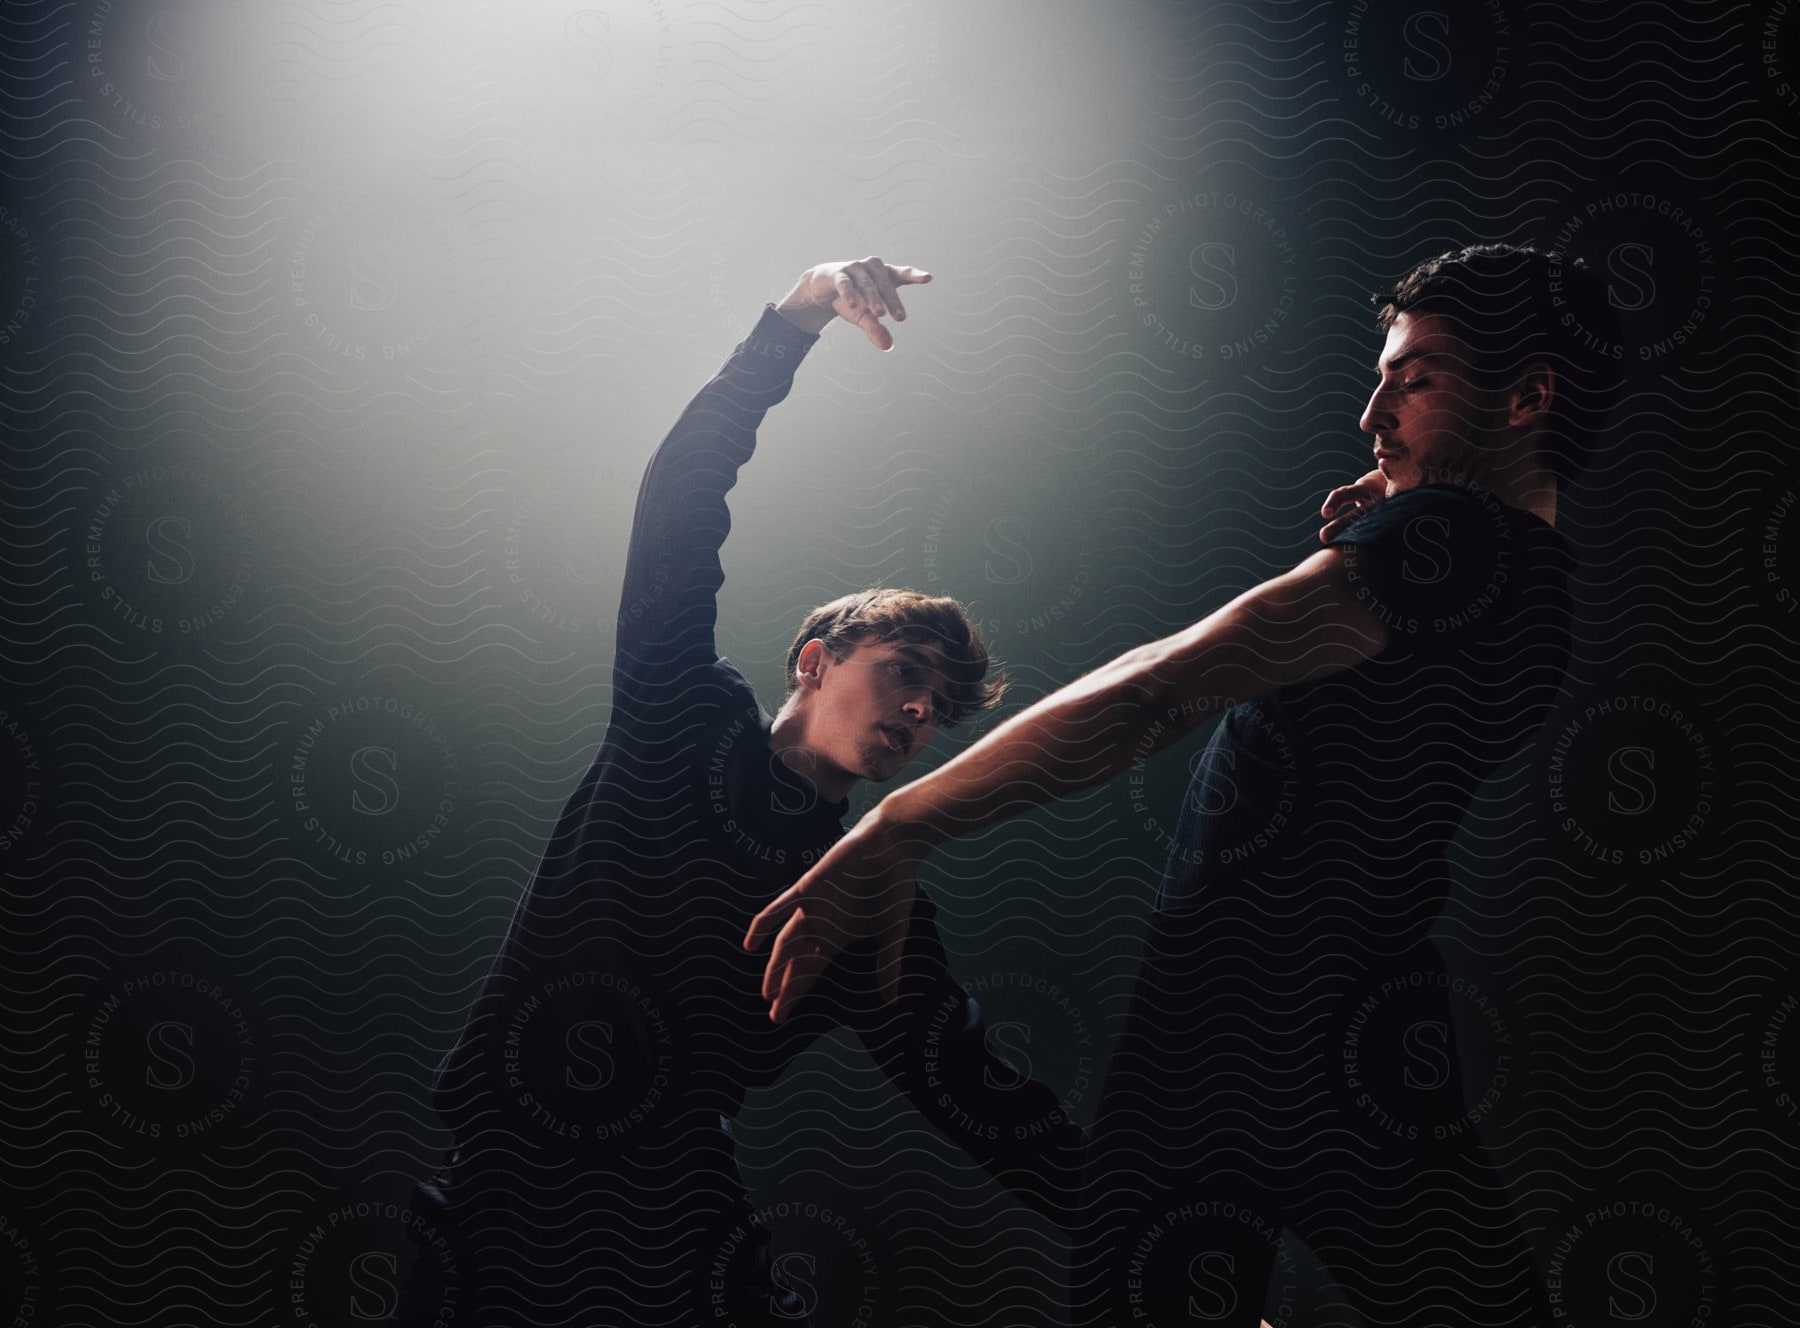 Two men wearing shirts dance in a spotlight in a dim-lit room.